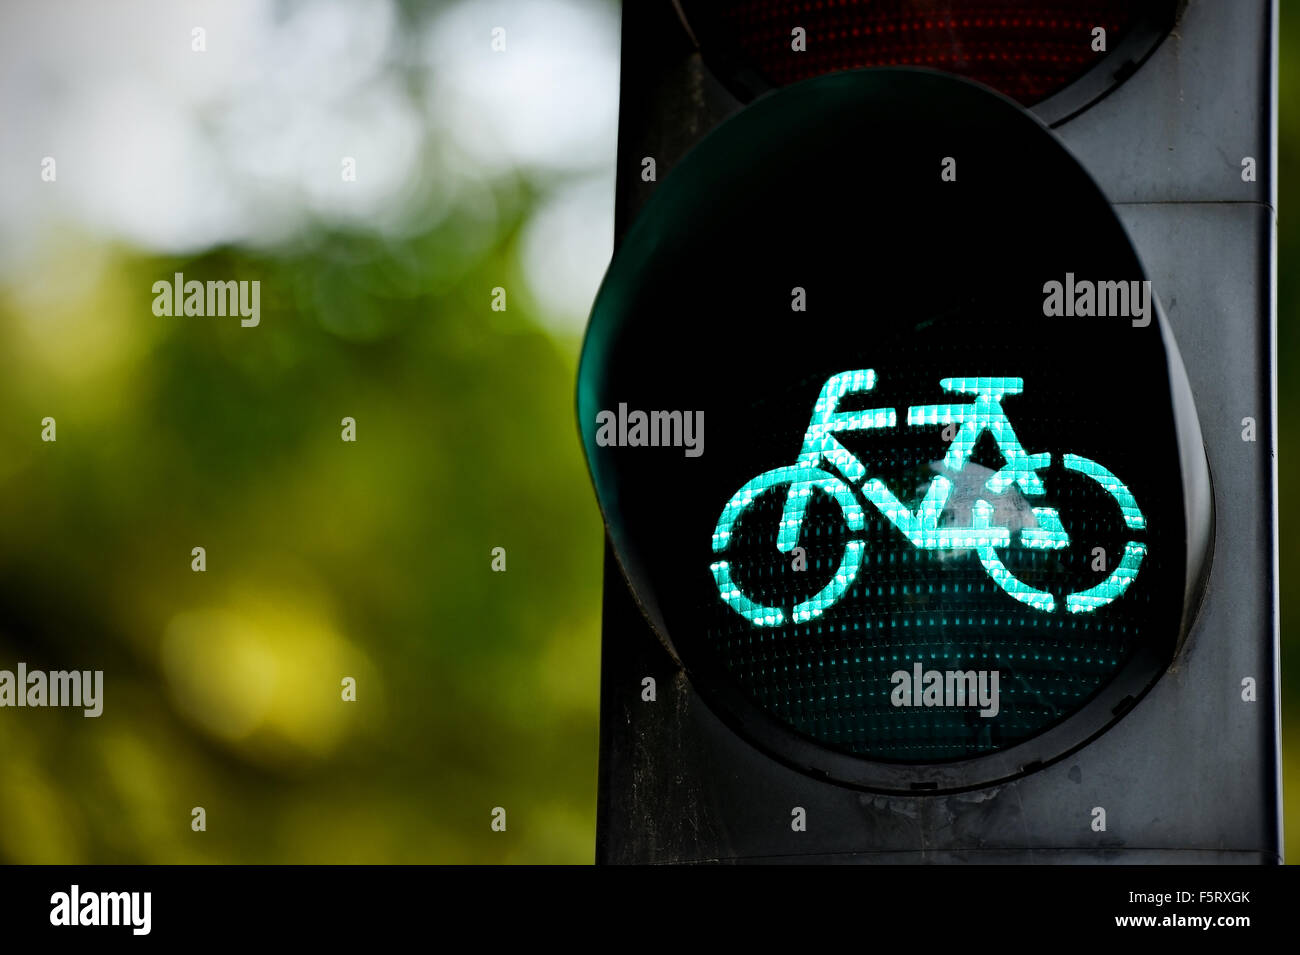 Dettaglio delle riprese con una bicicletta traffico commutato di luce di colore verde Foto Stock